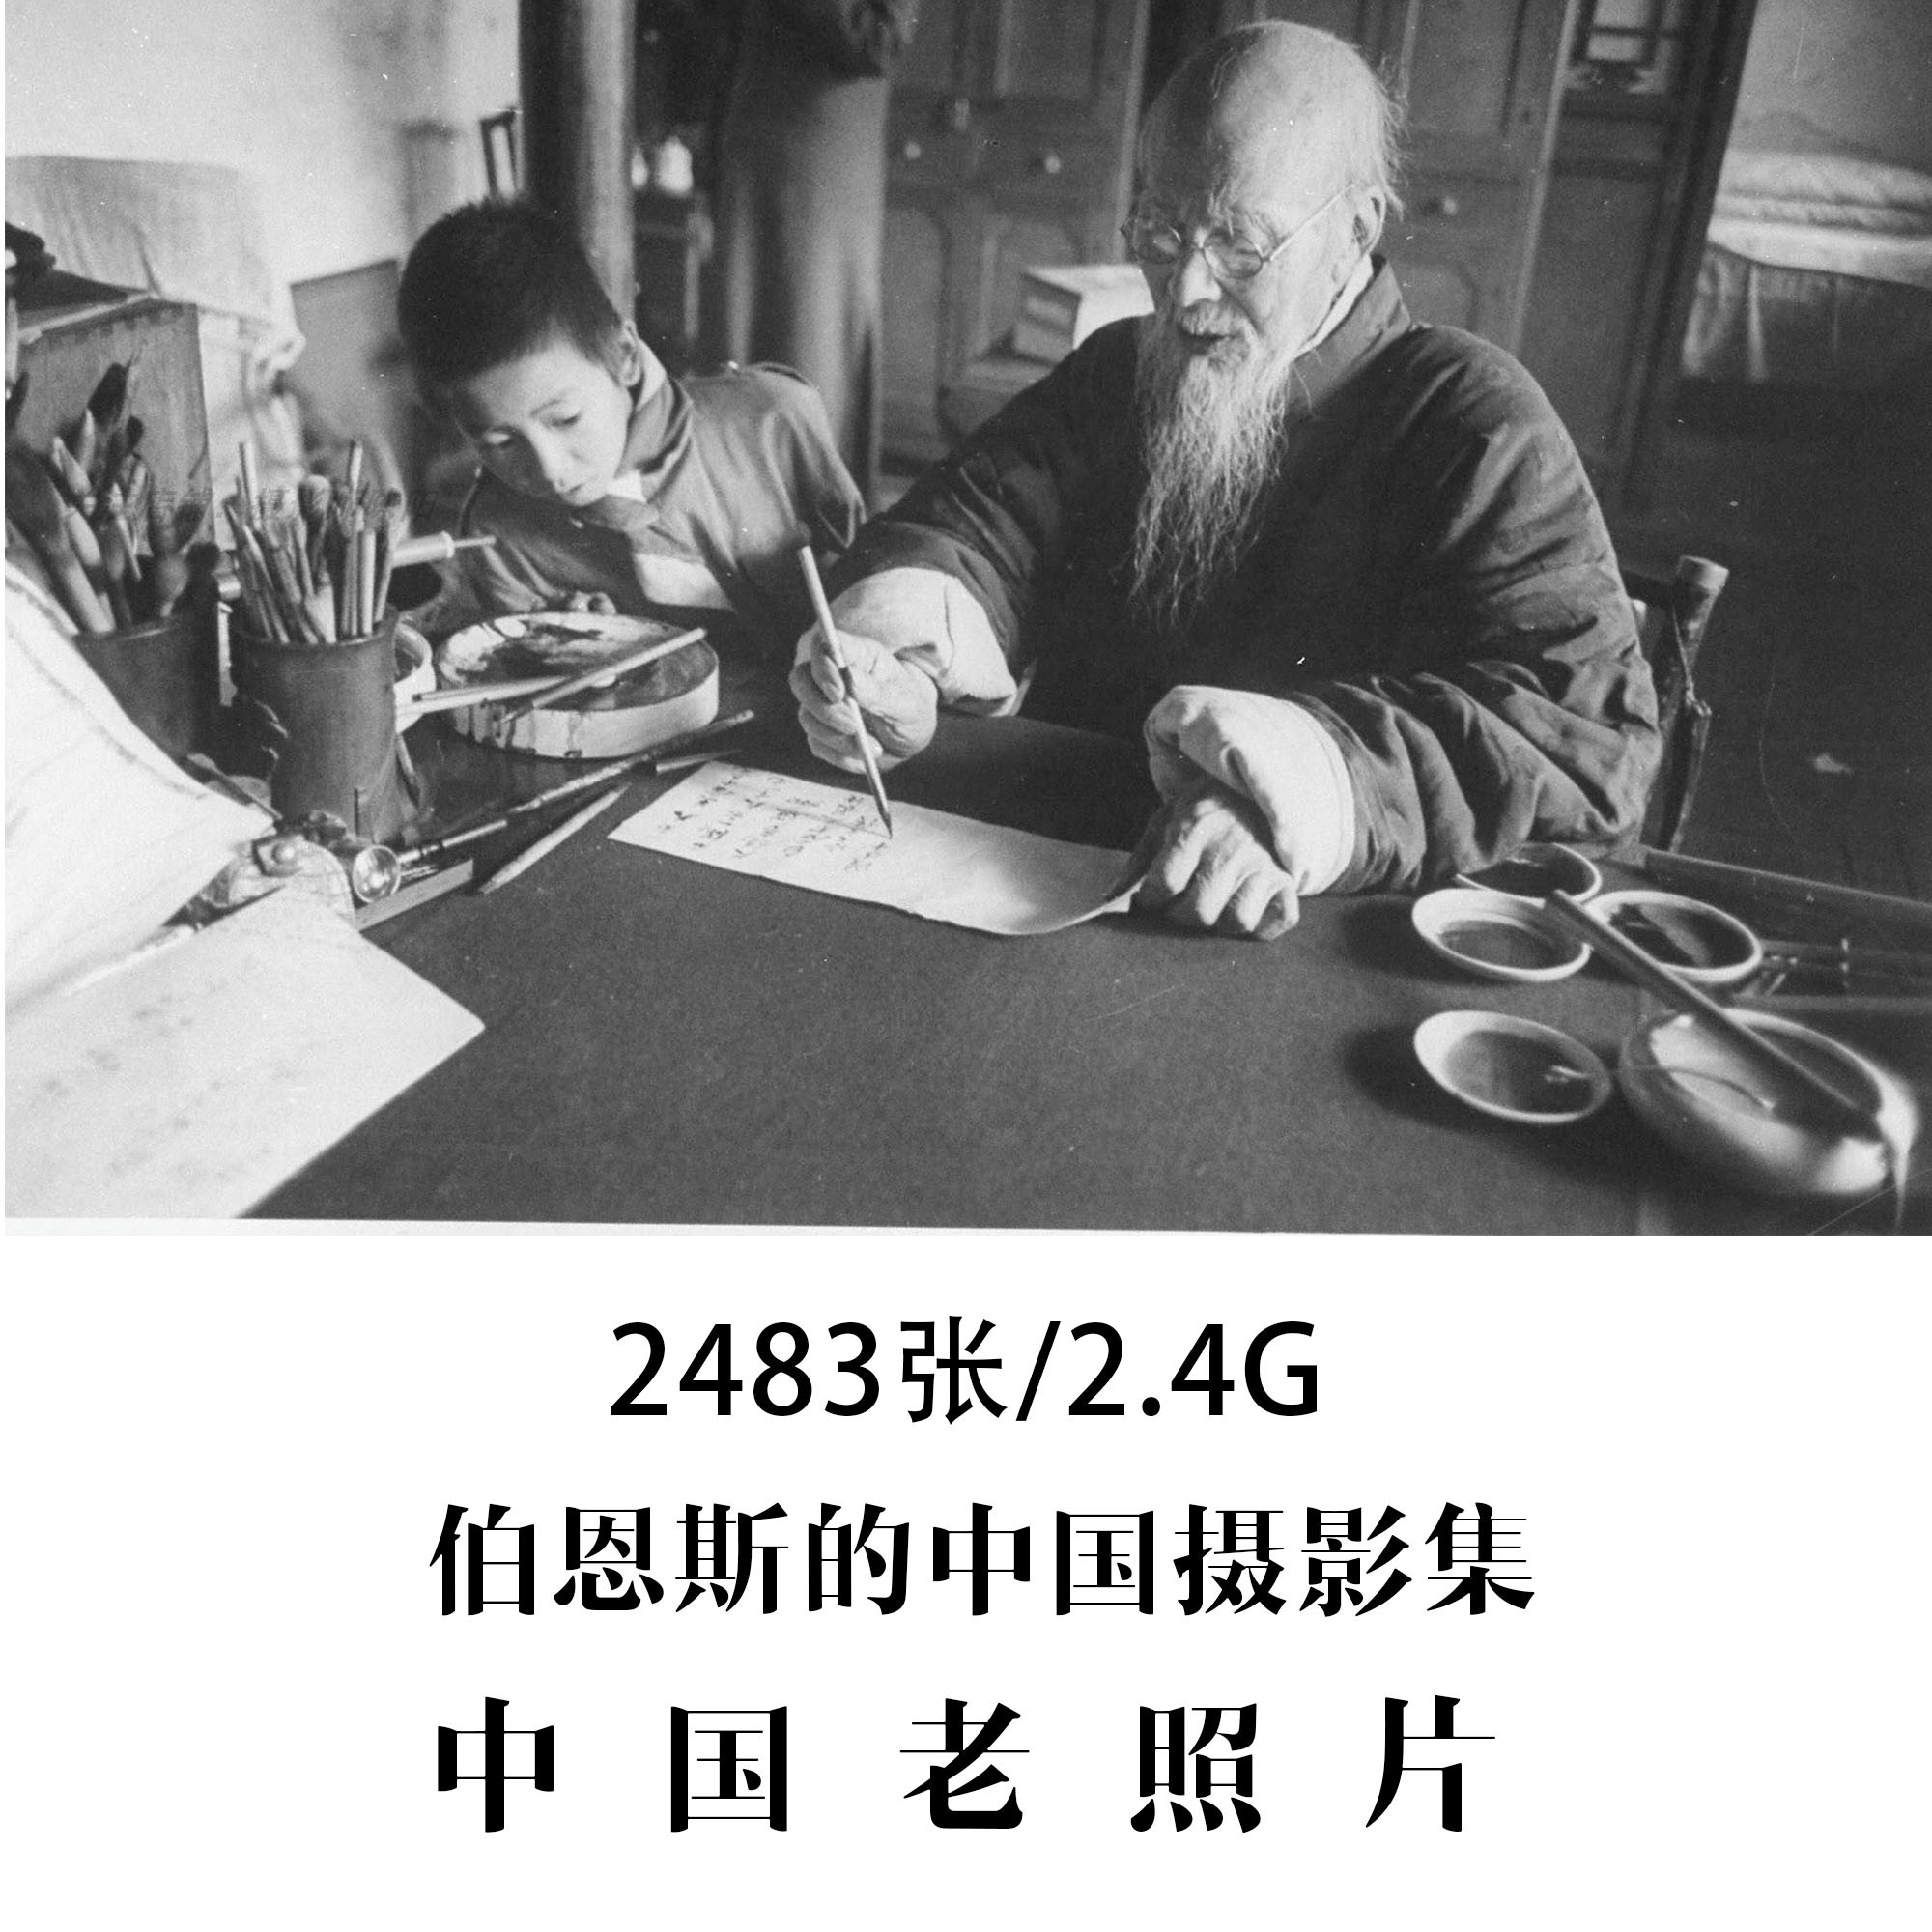 伯恩斯的中国摄影集1947-1949年老照片摄影作品电子图片素材